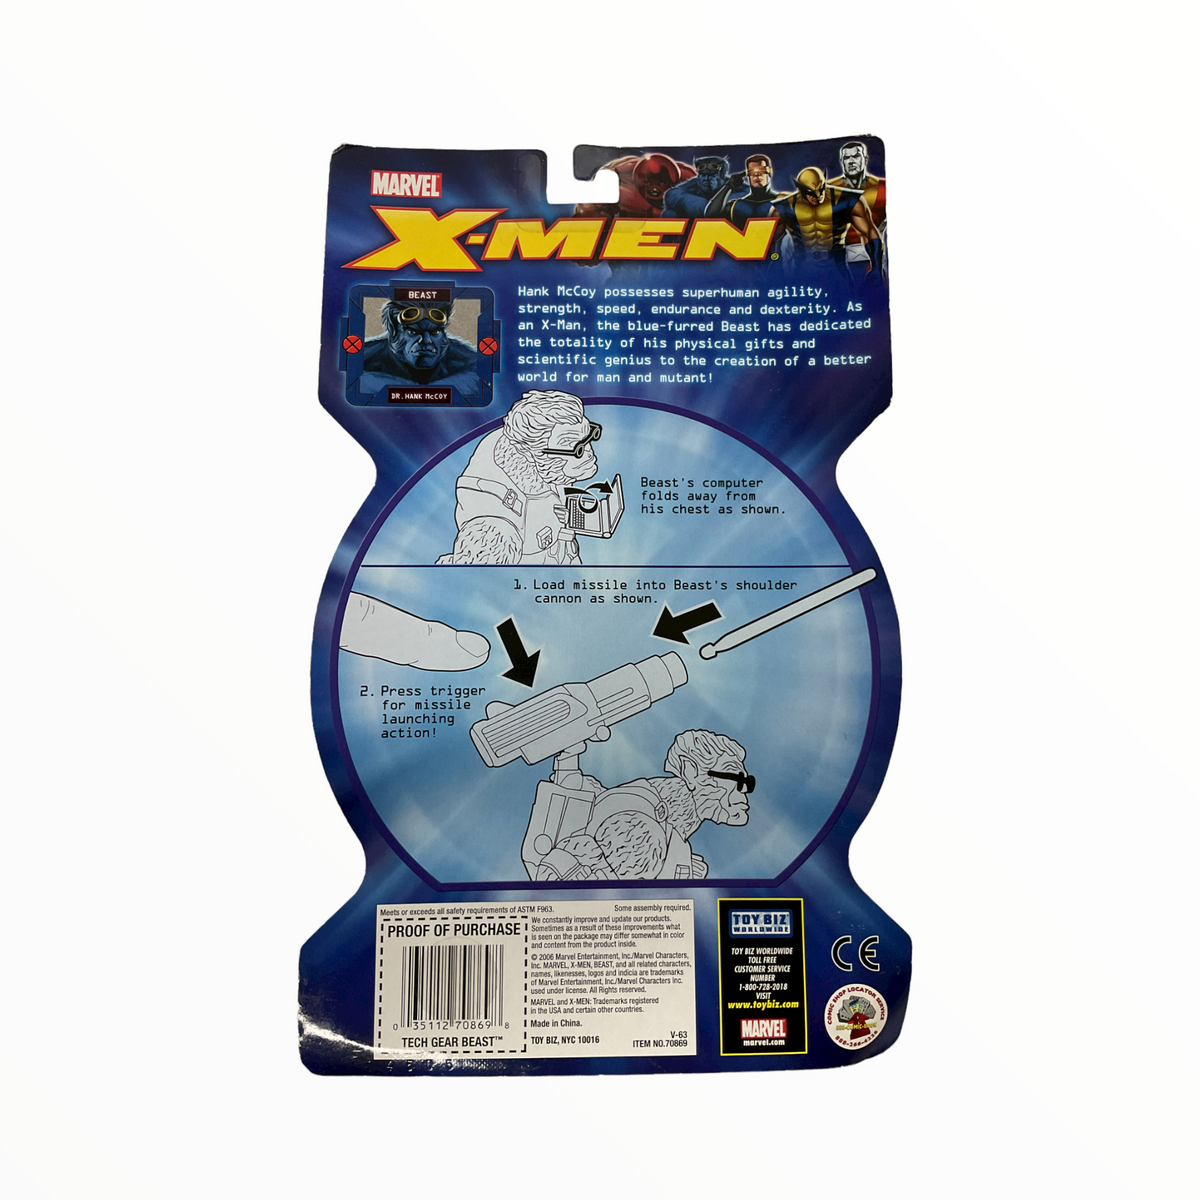 X-Men Action Figure Asst. 2:Tech Gear Beast w/ Cannon Launcher